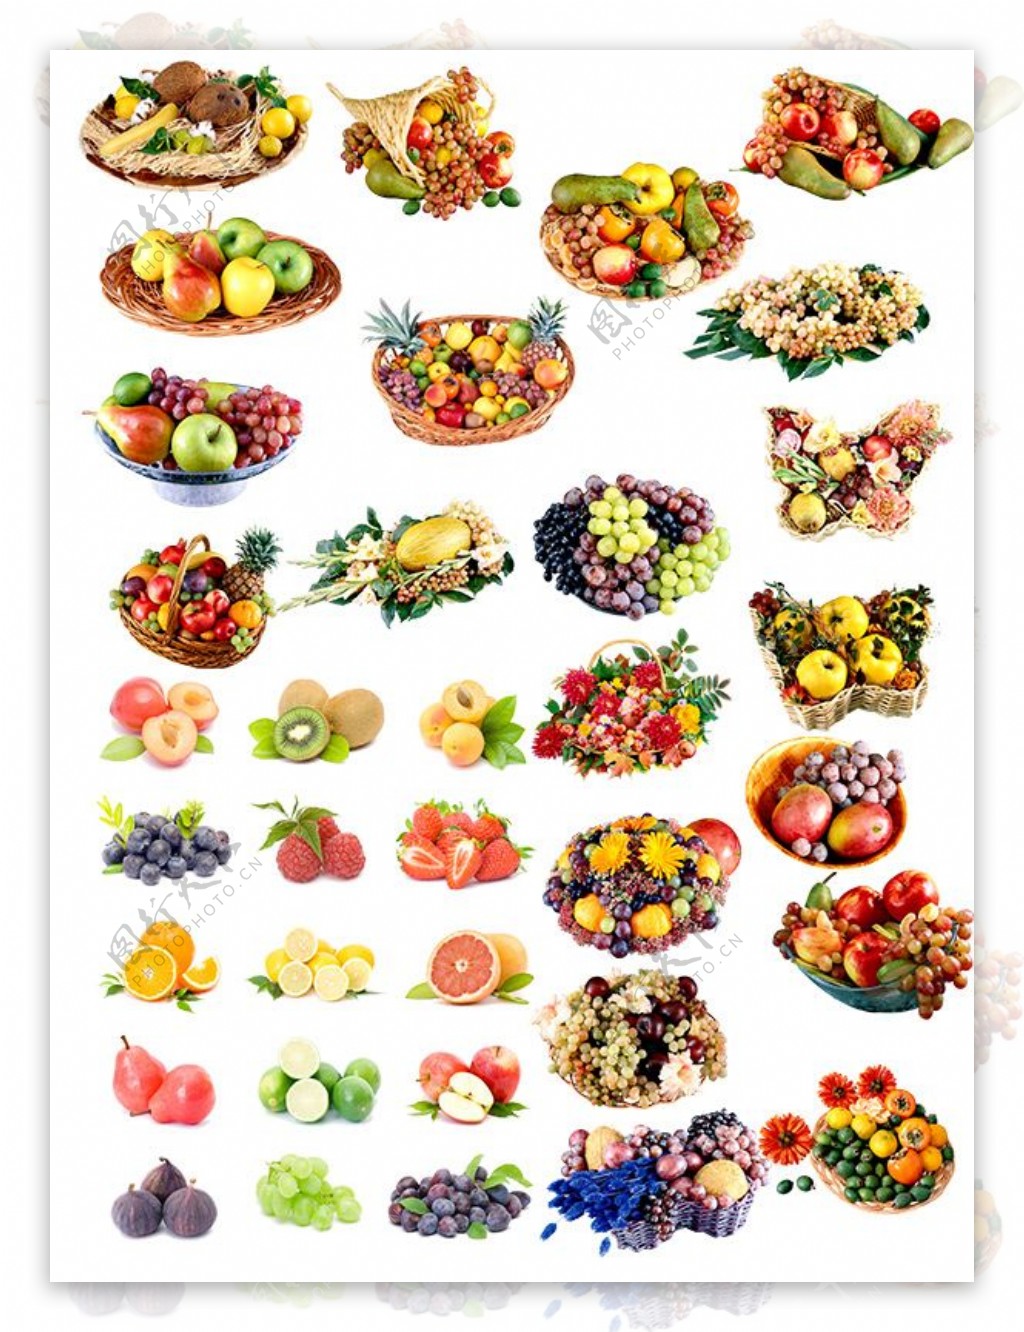 水果拼盘各种水果元素